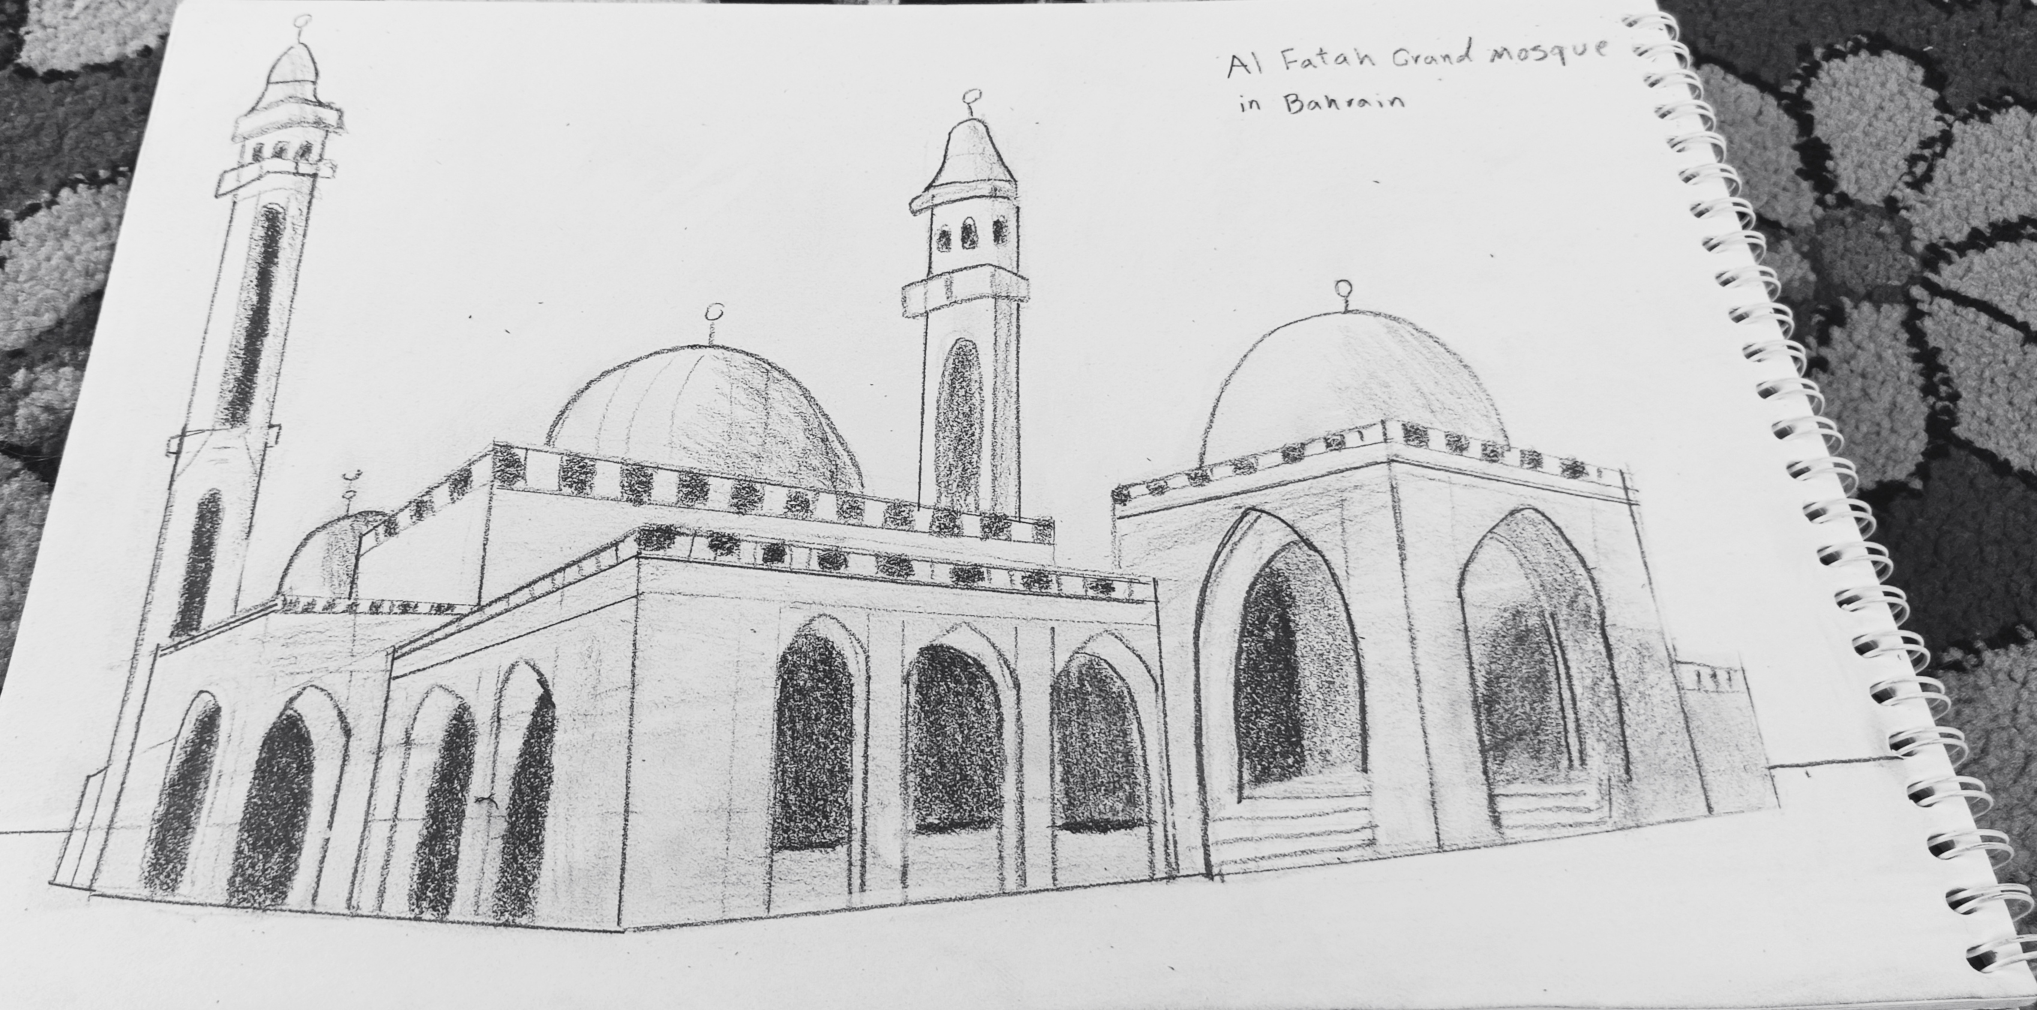  Al Fatah mosque in Bahrain